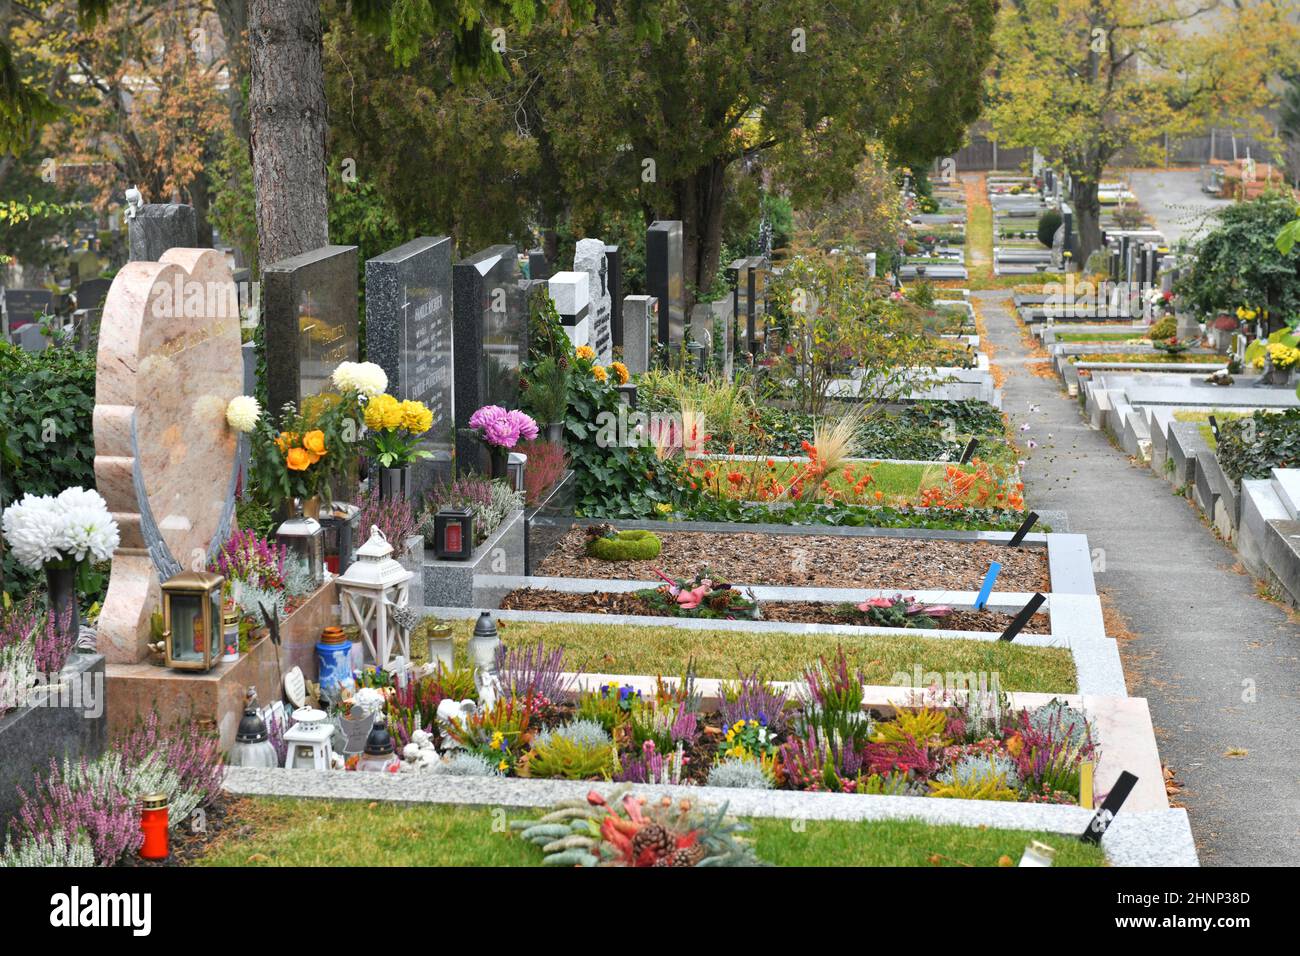 Friedhof Grinzing a Vienna, Österreich, Europa - Cimitero di Grinzing a Vienna, Austria, Europa Foto Stock